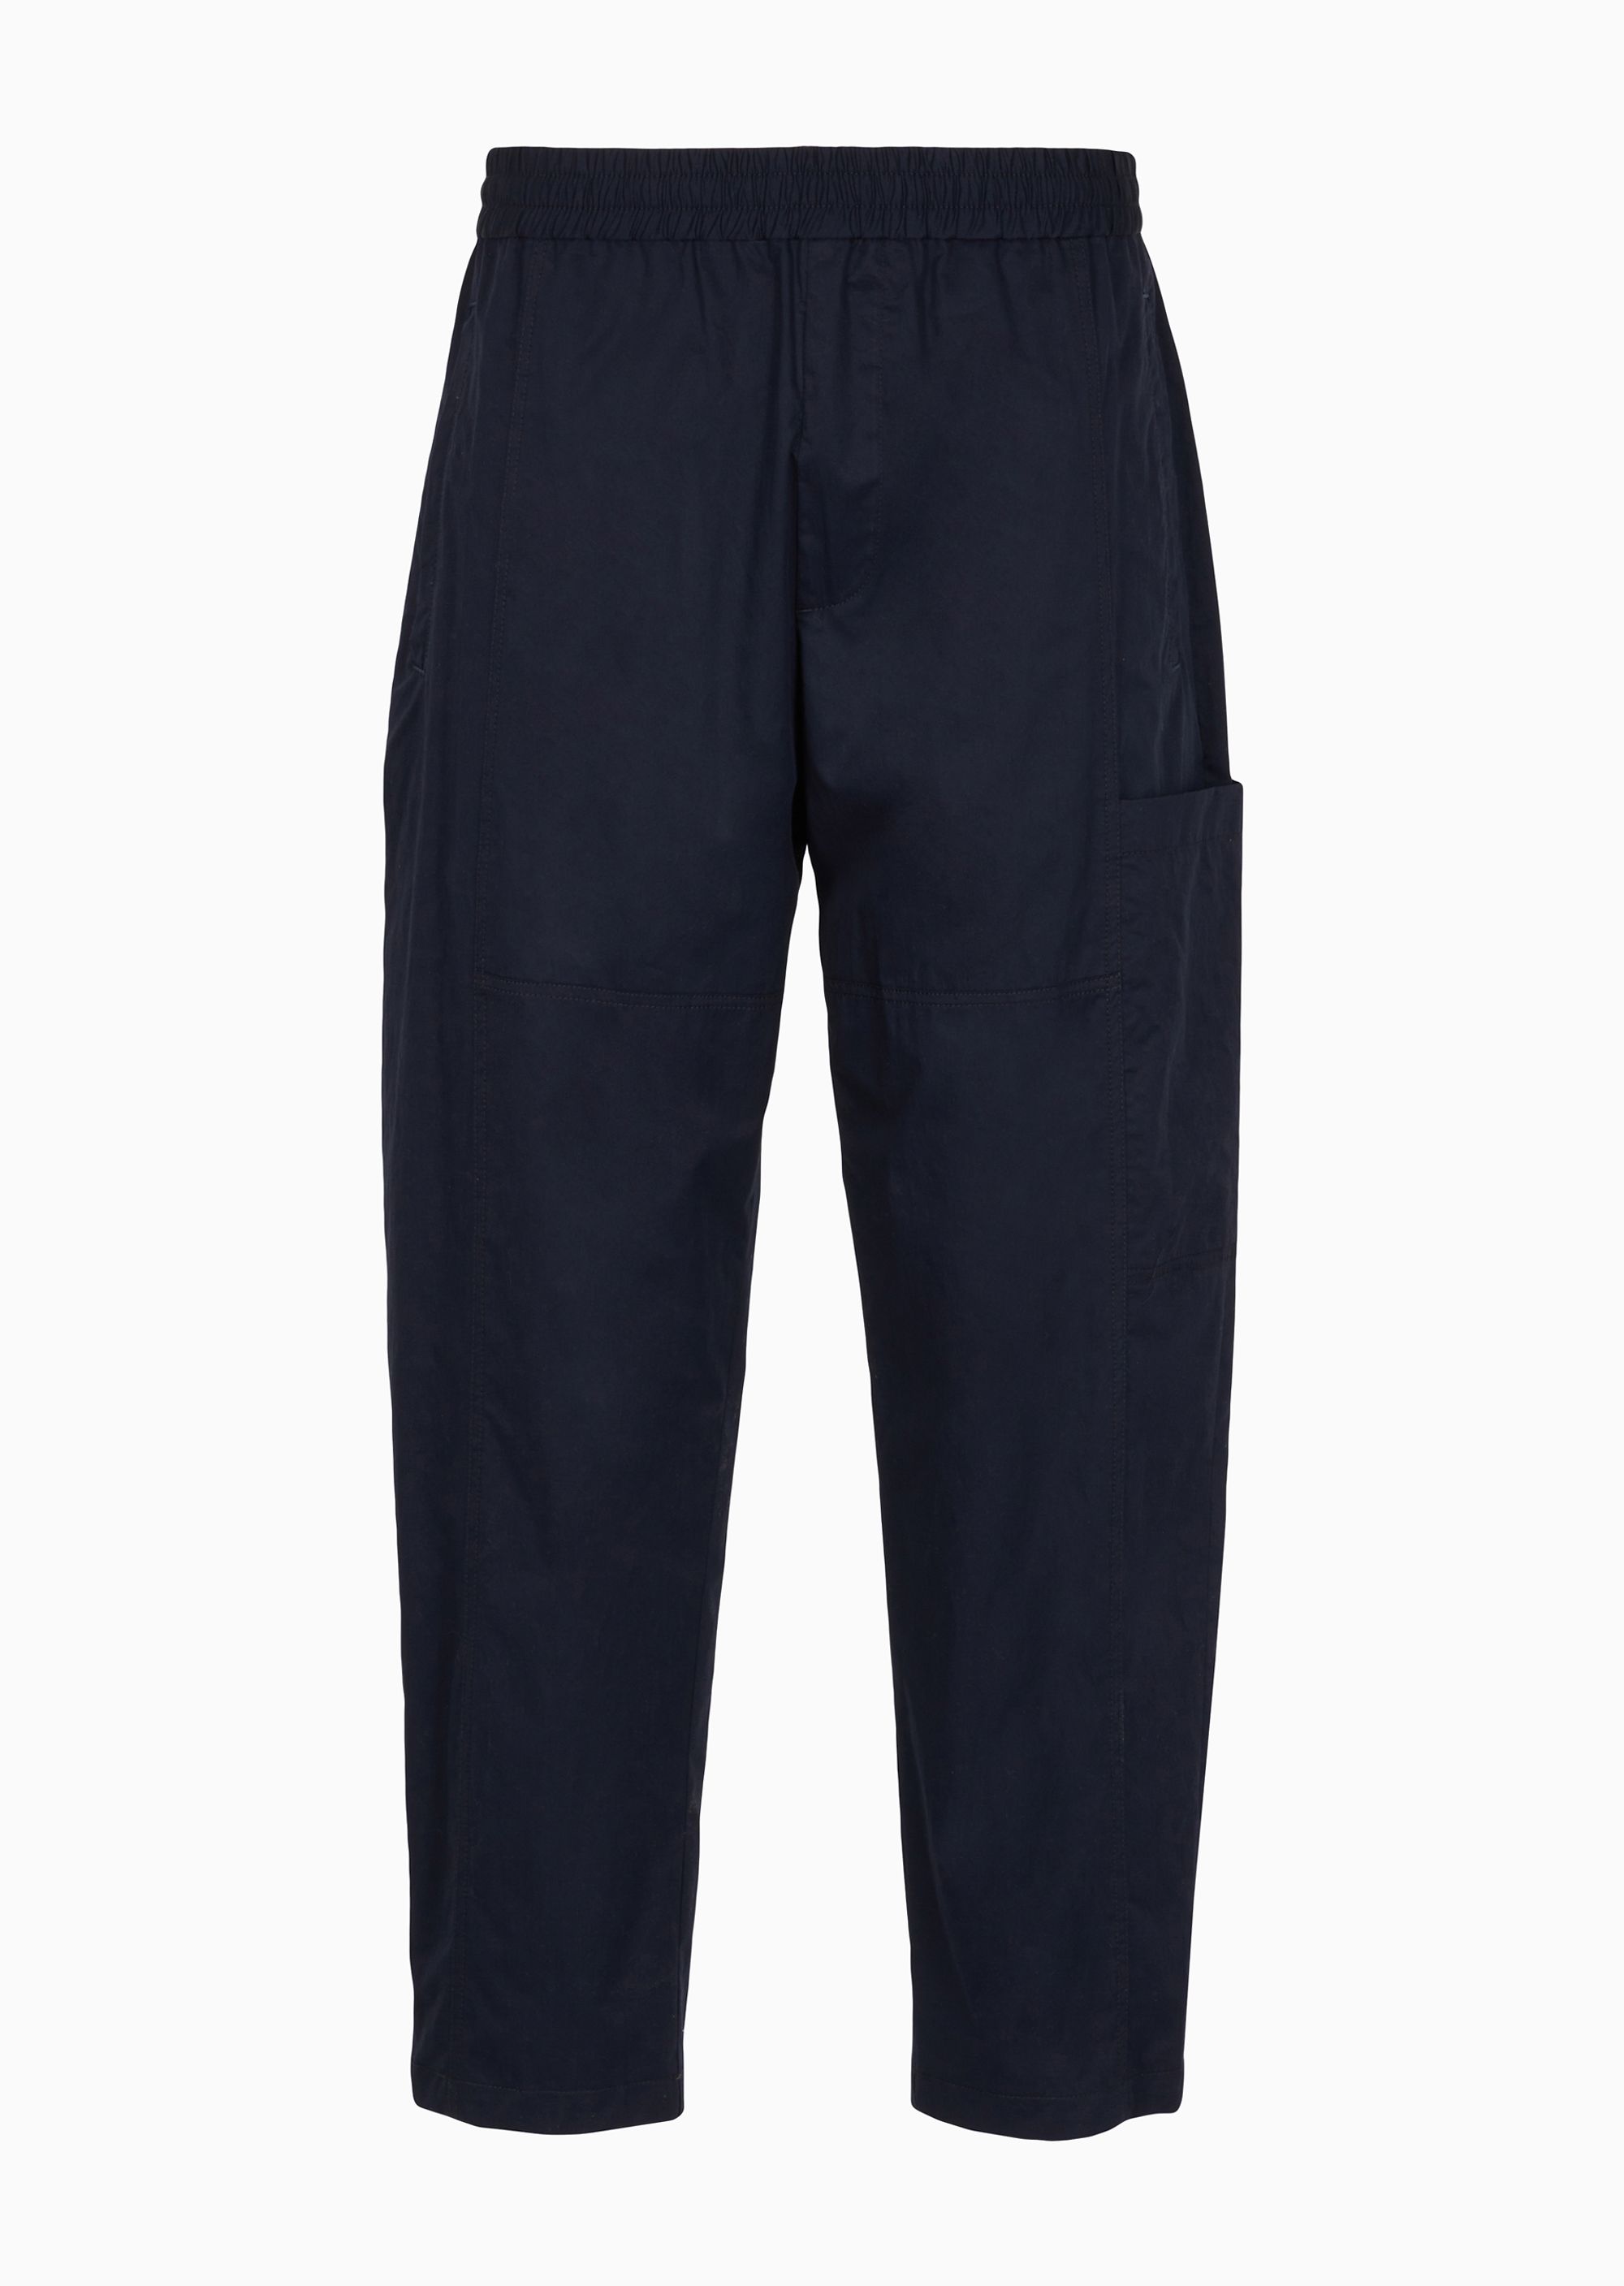 Брюки Armani Exchange Casual, темно-синий широкие джинсовые брюки с высокой талией темно синие kayra